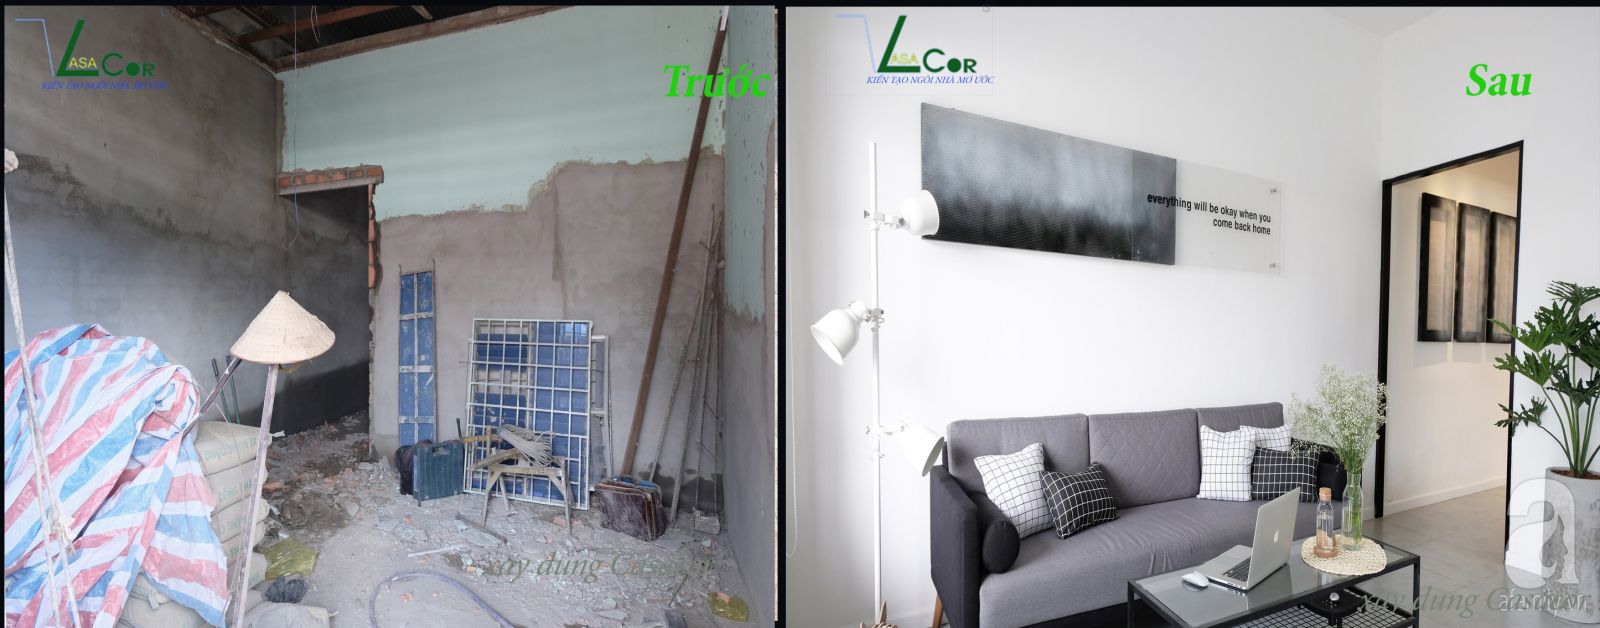 Phòng khách trước và sau khi sửa chữa nhà